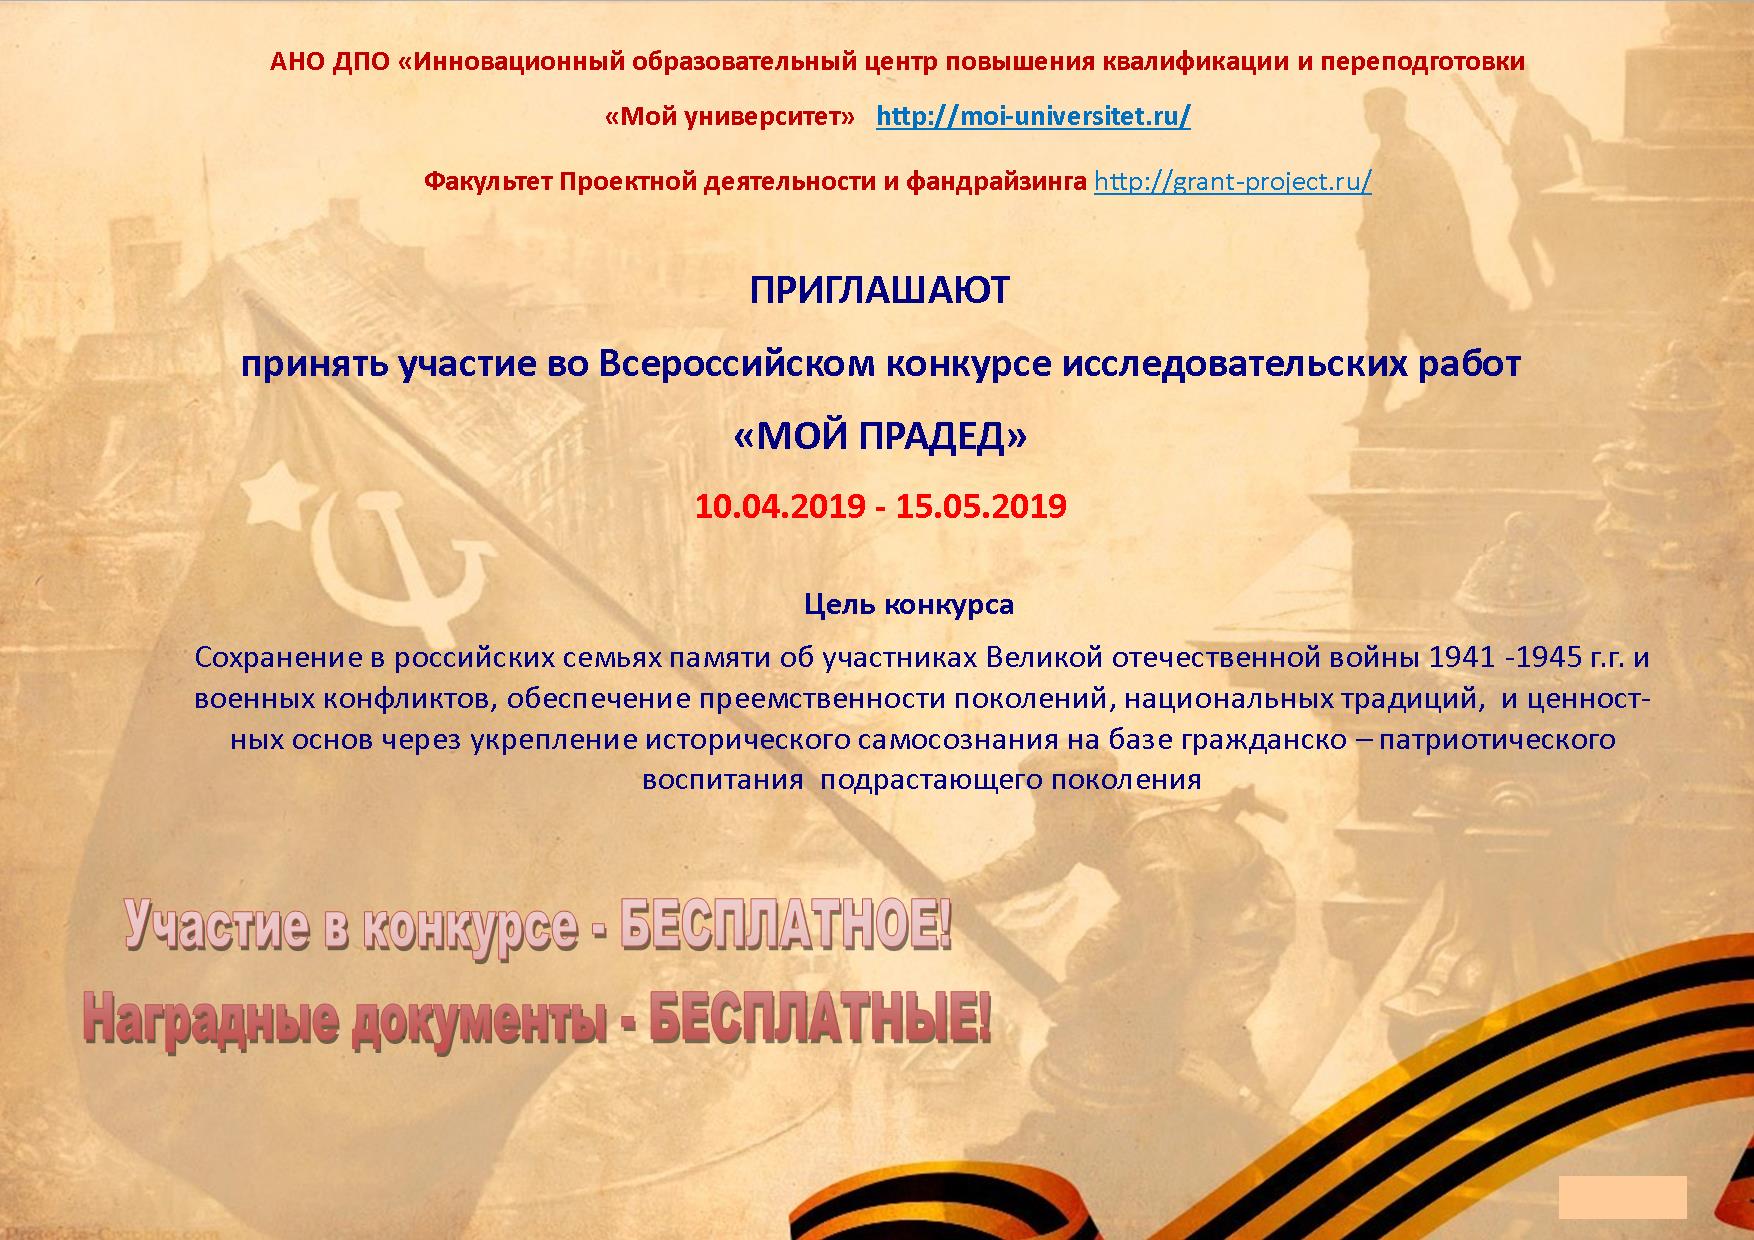 Всероссийский конкурс исследовательских работ «Мой прадед» 